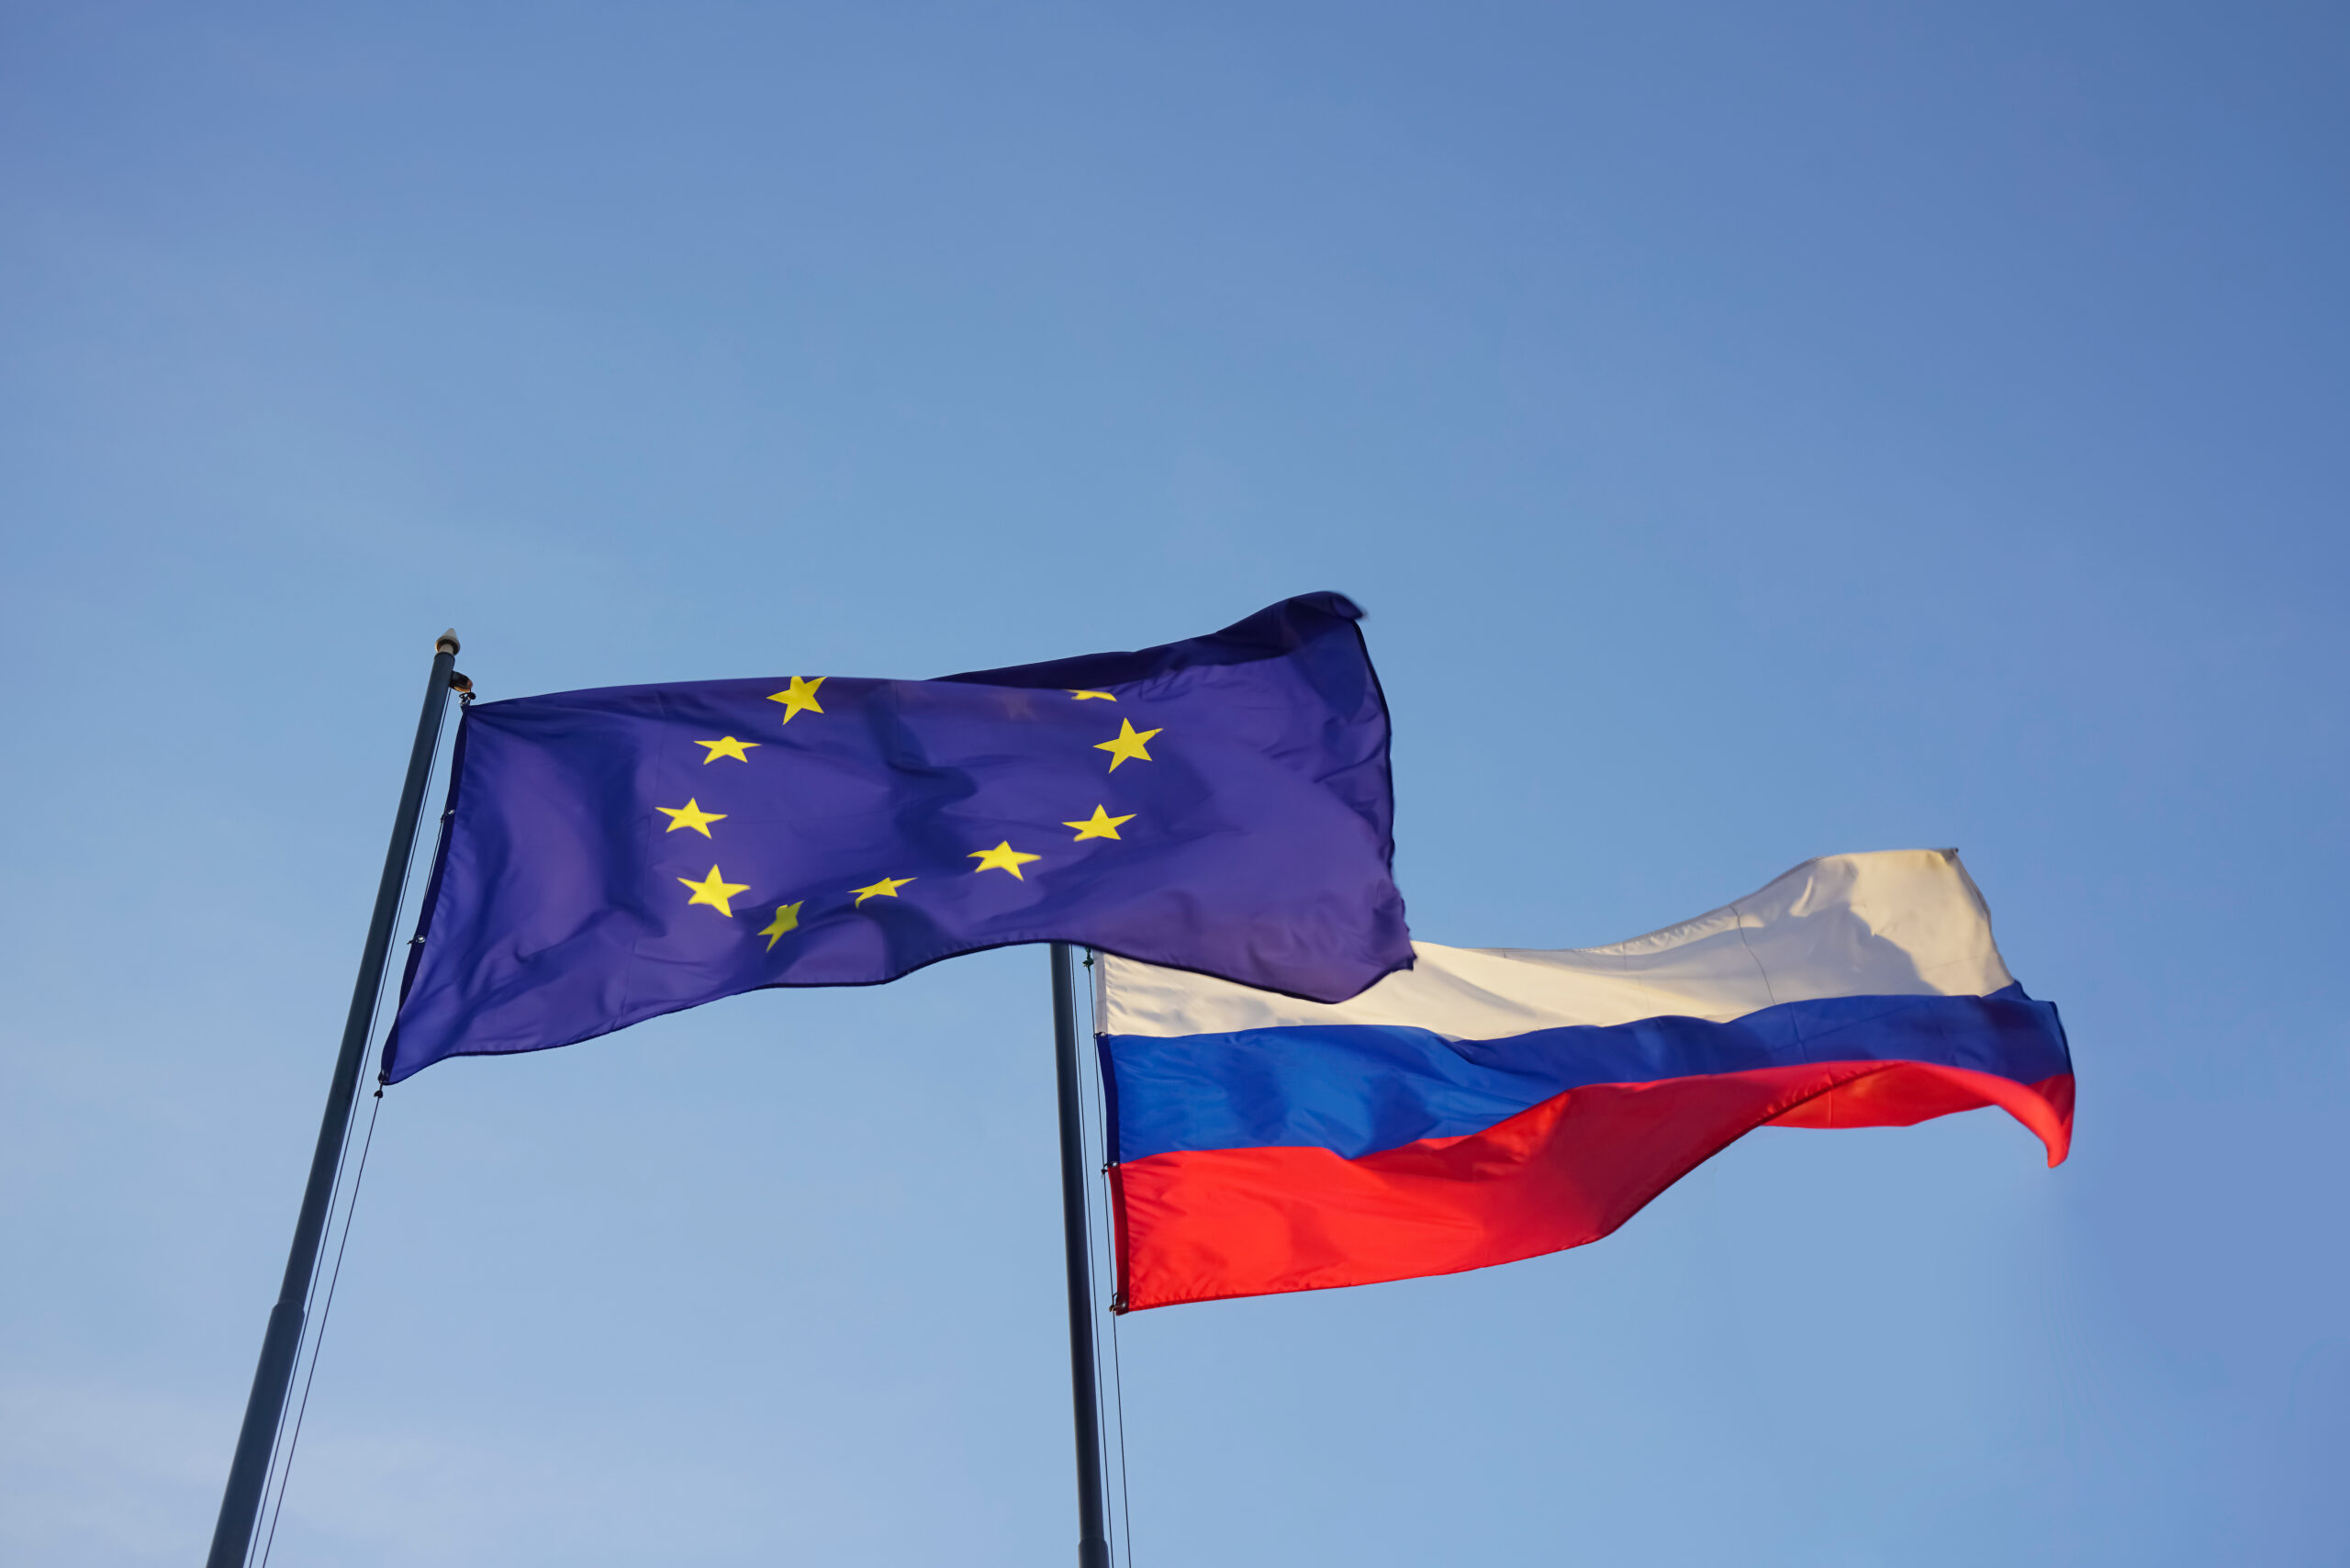 تحریم های اتحادیه اروپا علیه روسیه فرصتی برای تولیدکنندگان نوظهور ایجاد می کند